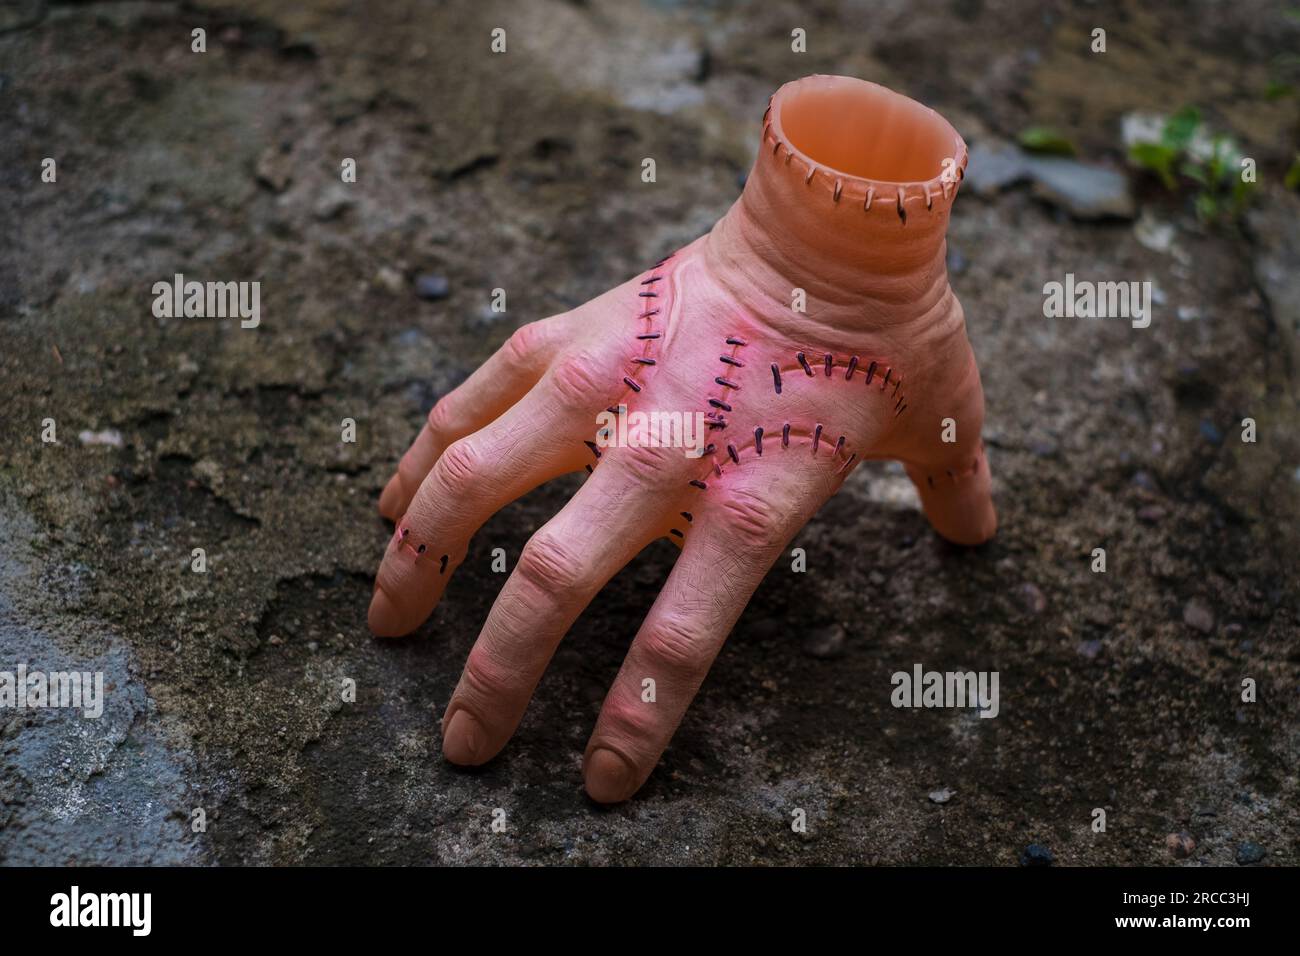 Unheimlich realistische menschliche Hand mit Narben und Stichen. Hand mit aktiven Fingern abschneiden. Plastikspielzeug. Stockfoto